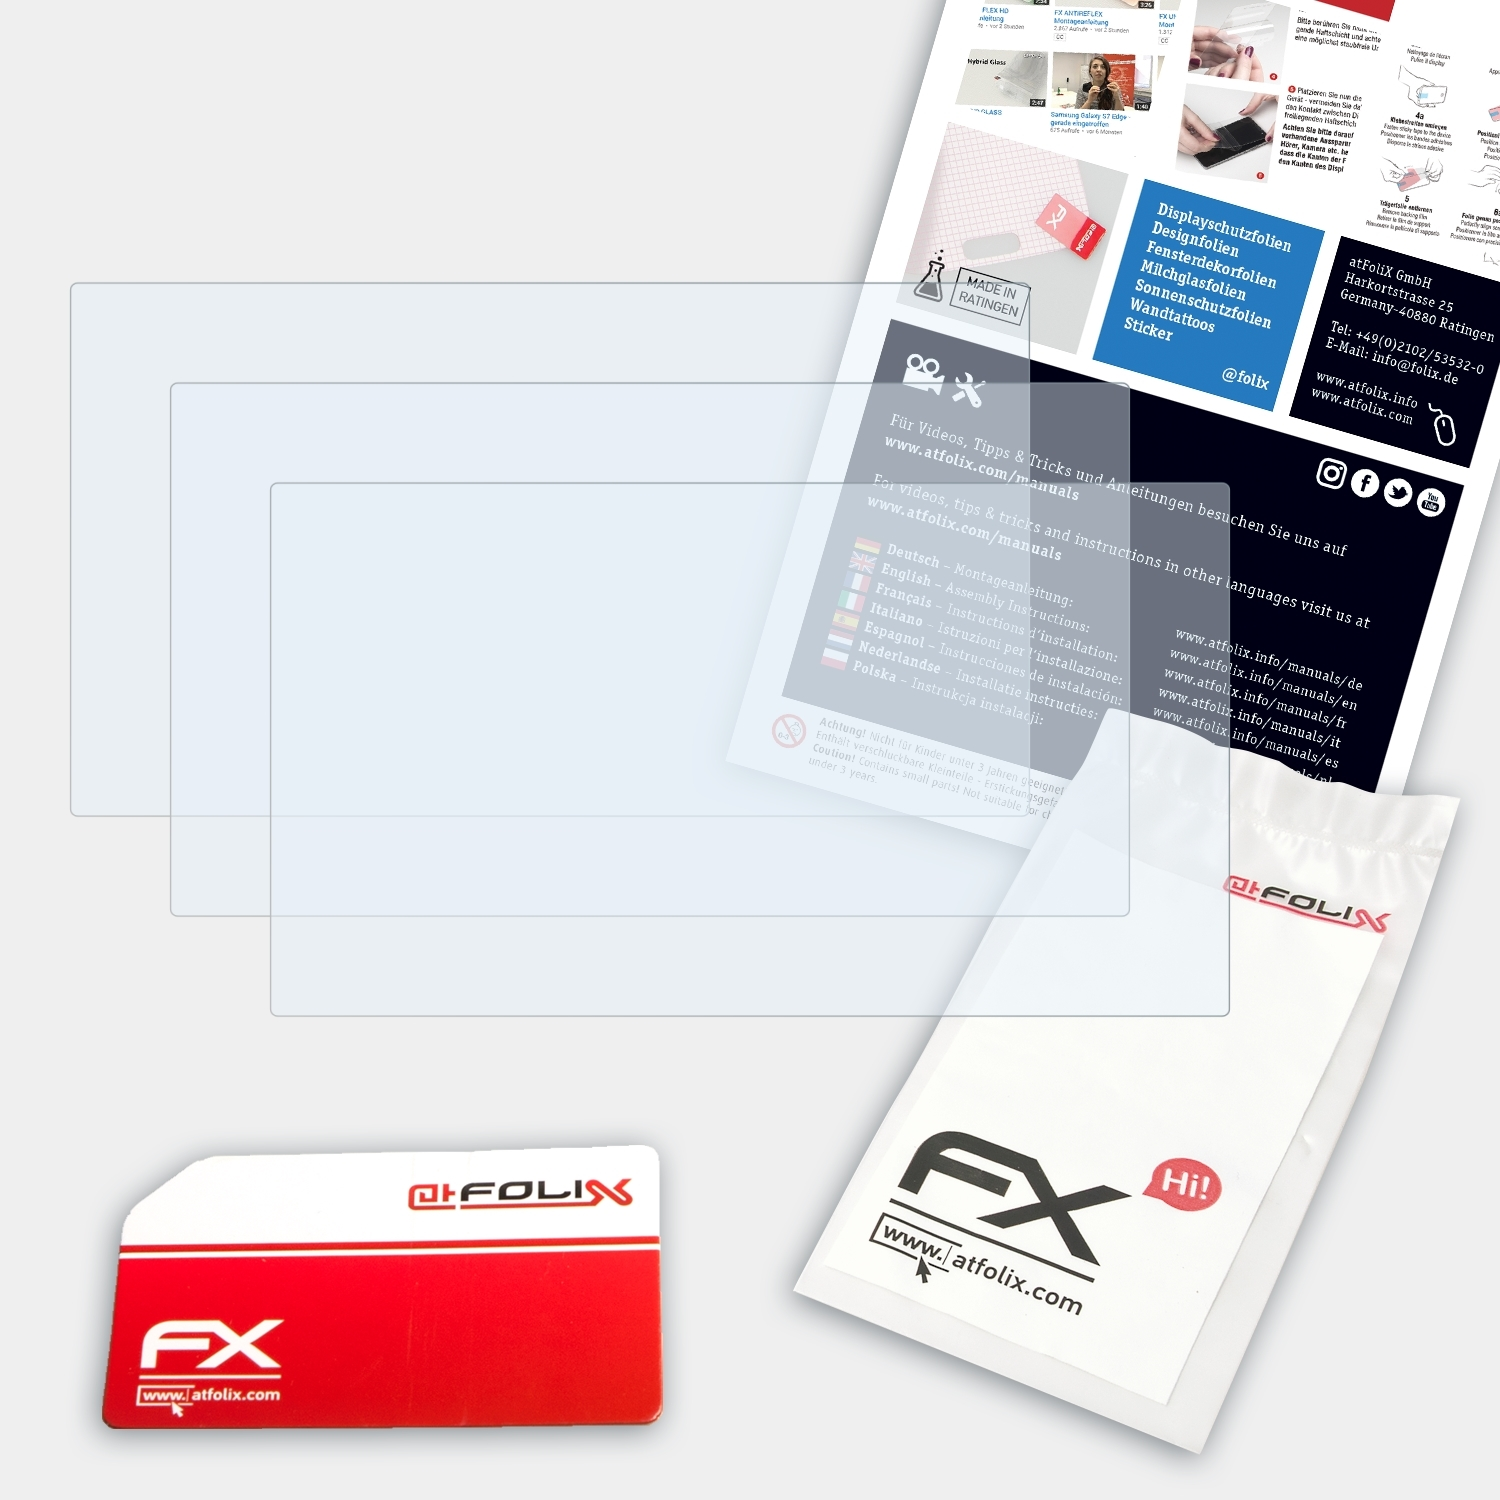 FX-Clear HDR-PJ410) ATFOLIX 3x Sony Displayschutz(für